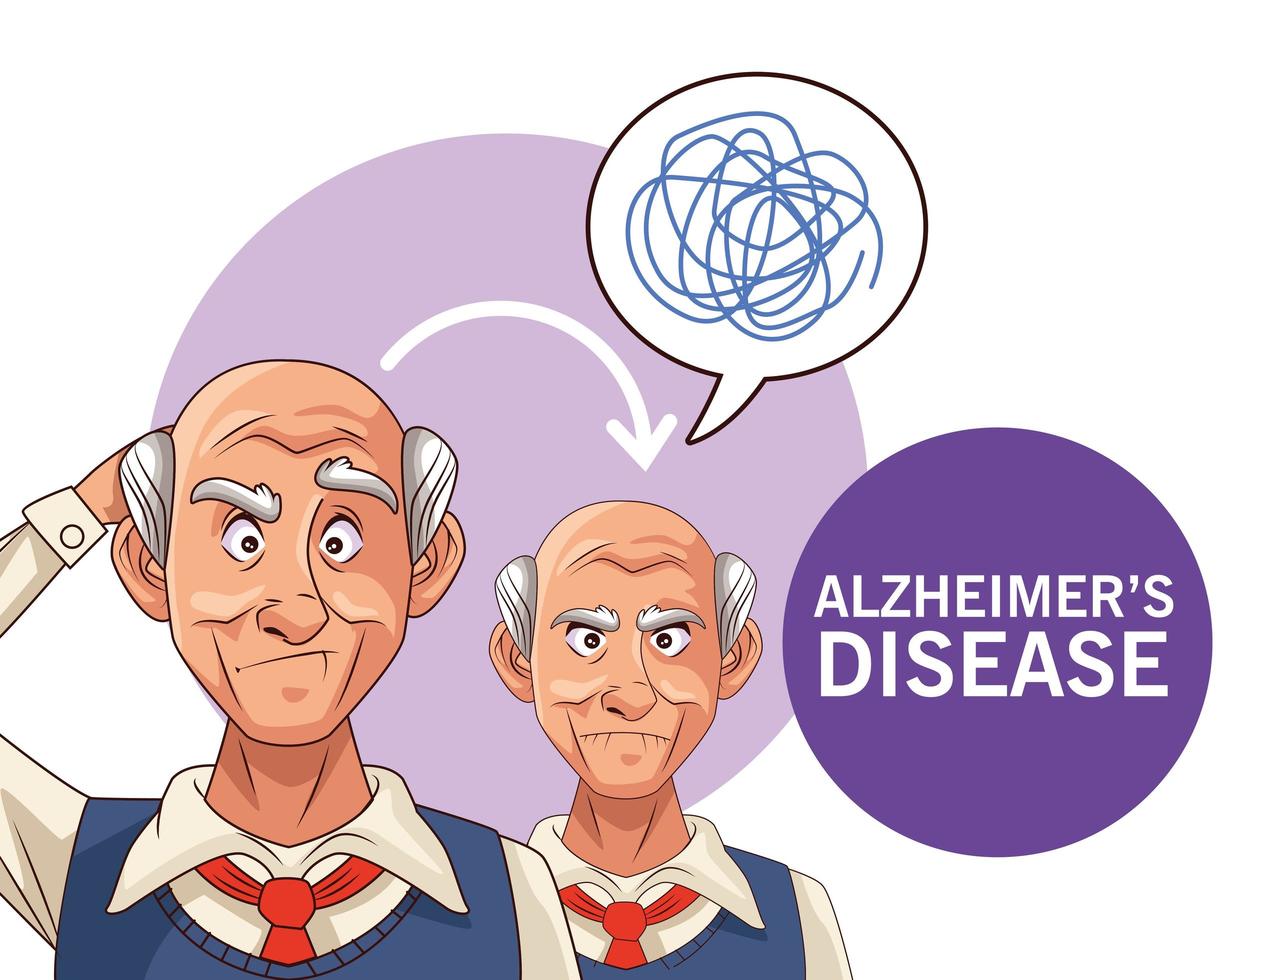 oude mannen patiënten met de ziekte van Alzheimer met tekstballonnen en krabbels vector